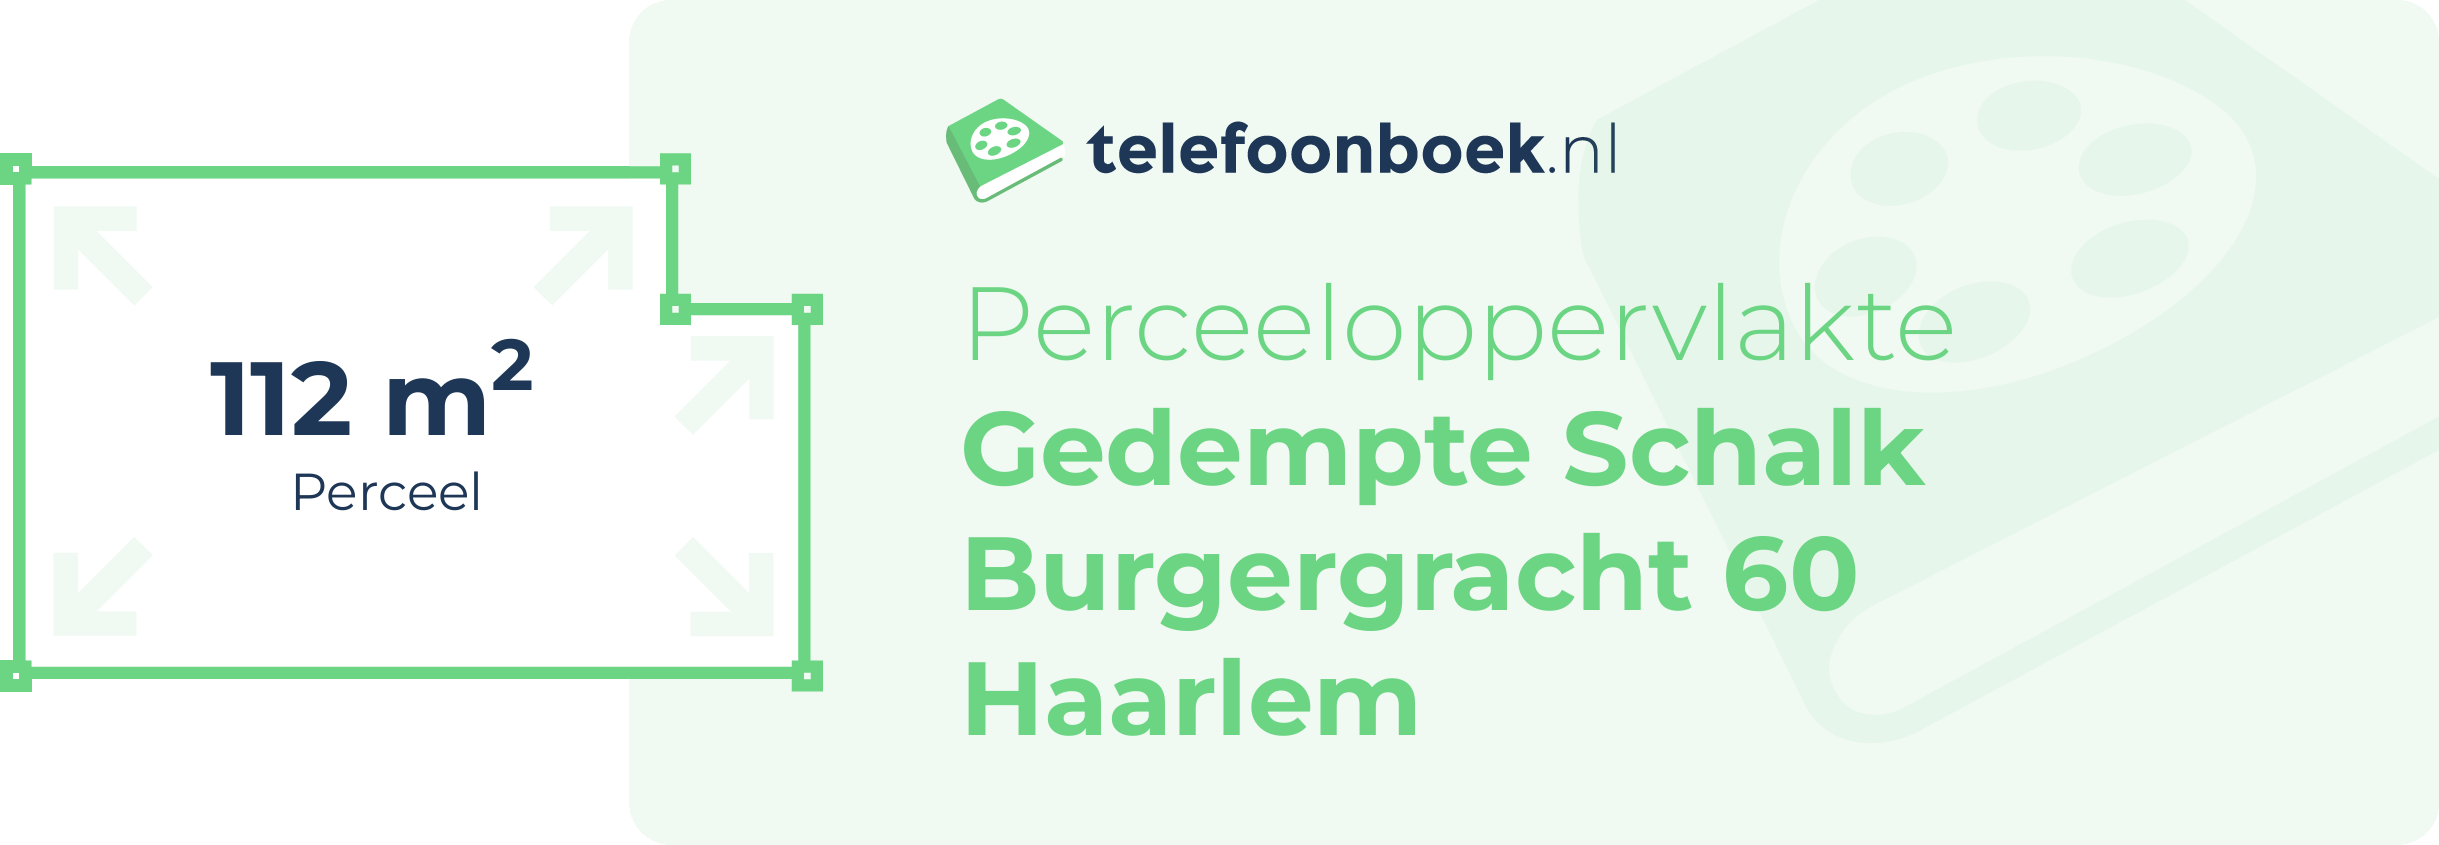 Perceeloppervlakte Gedempte Schalk Burgergracht 60 Haarlem